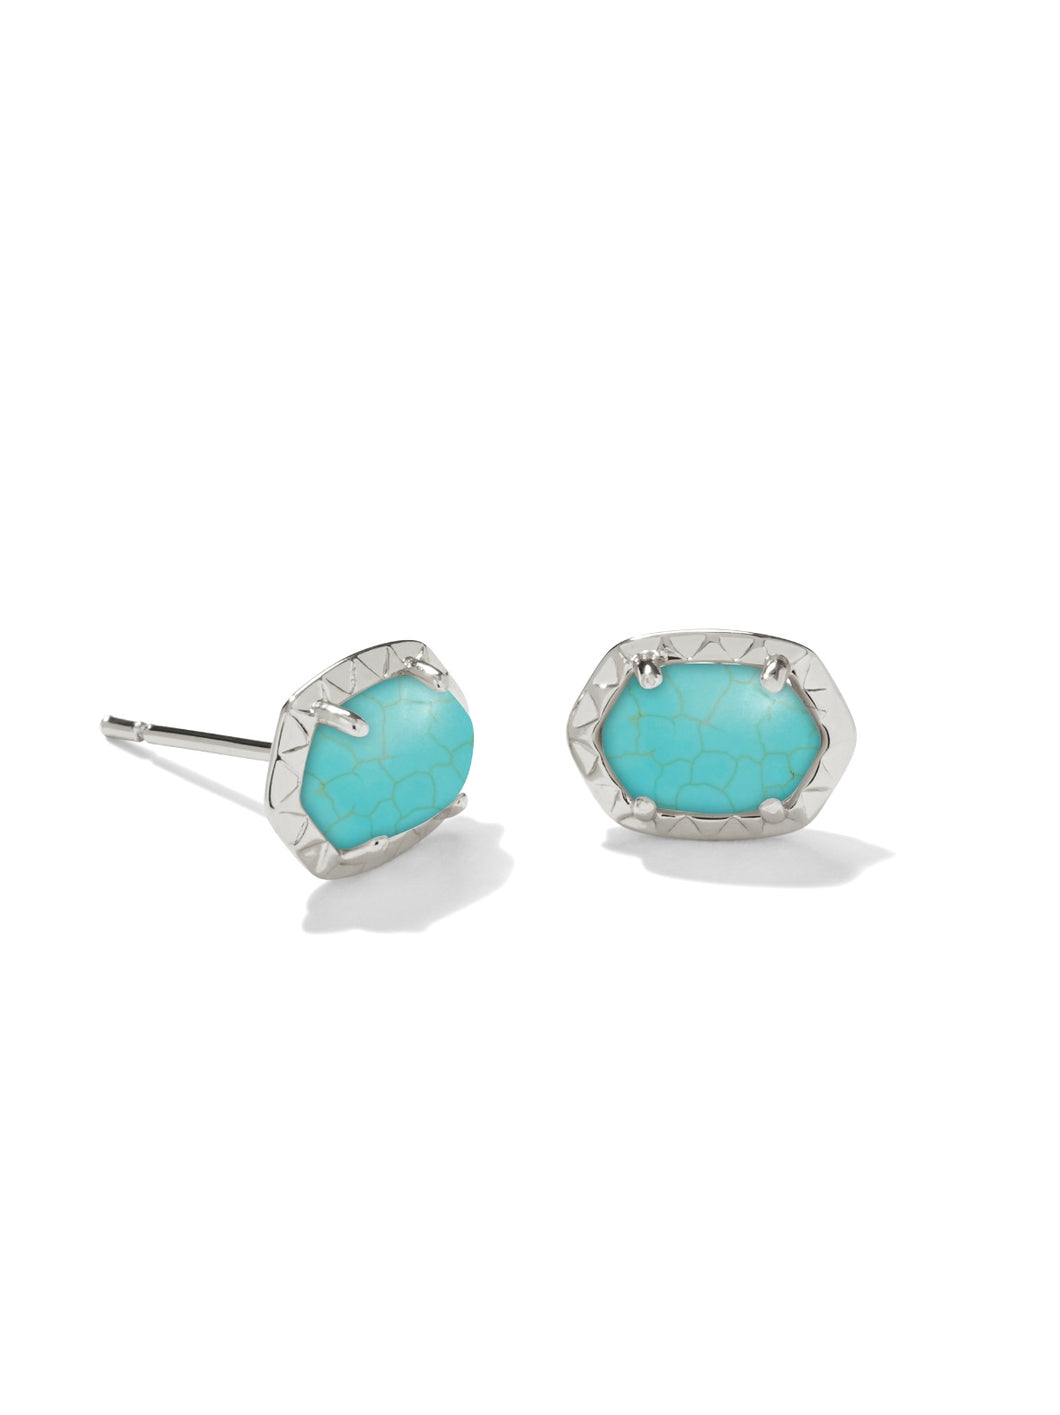 Kendra Scott: Daphne Stud Earrings in Rhod Turquoise